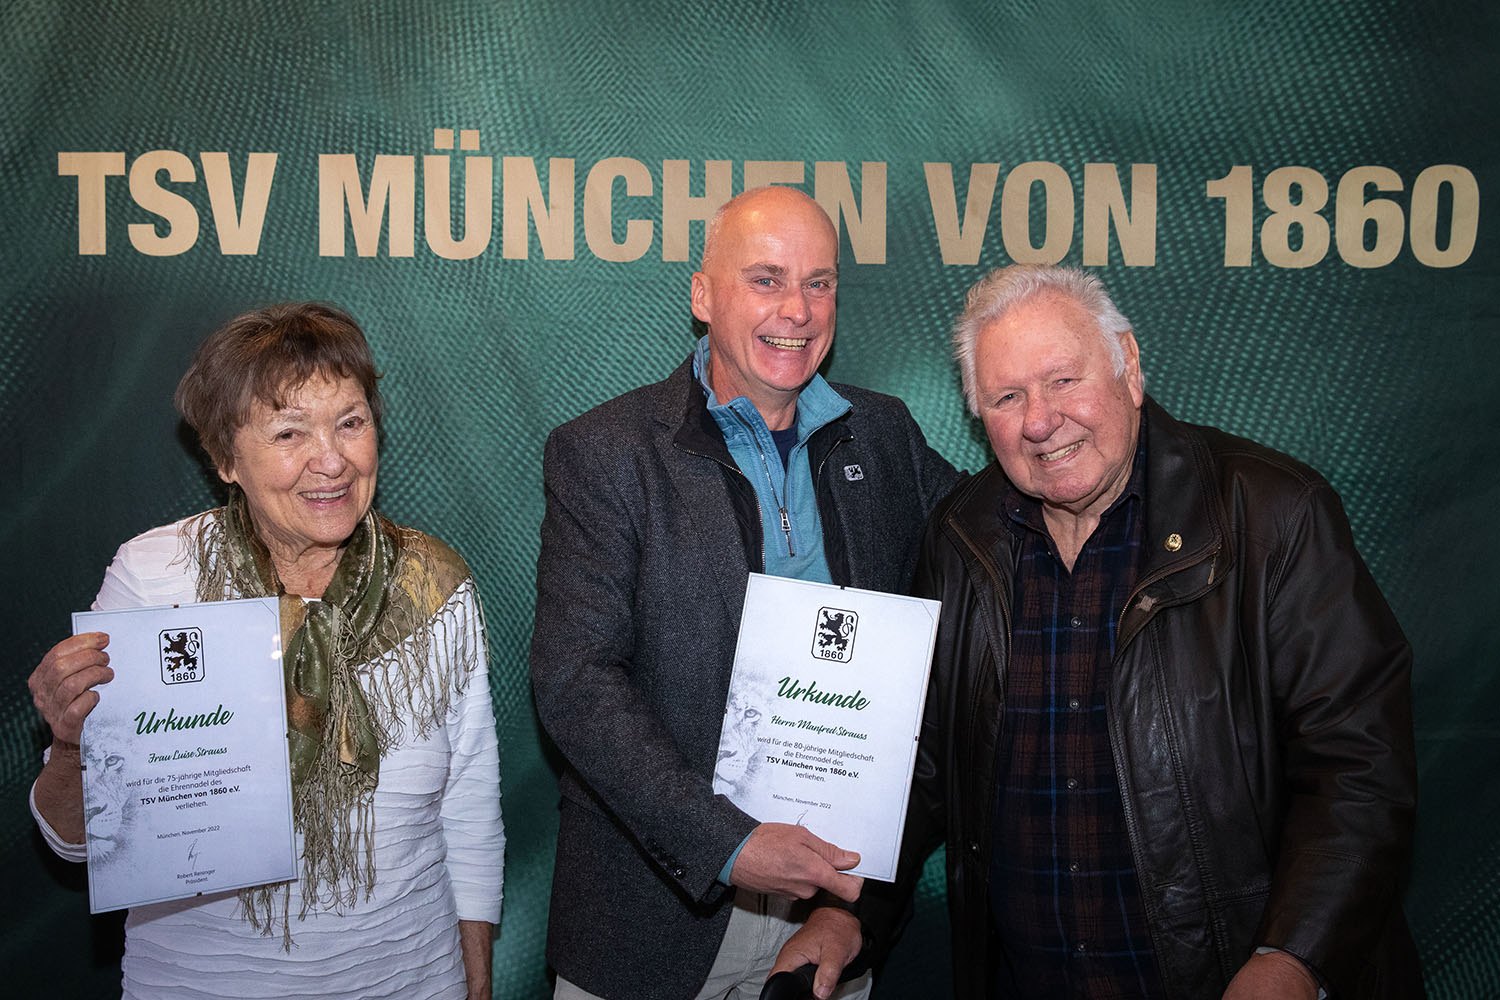 Gemeinsam 155 Jahre Mitgliedschaft: Luise und Manfred Stauss mit Präsident Robert Reisinger in der Mitte.